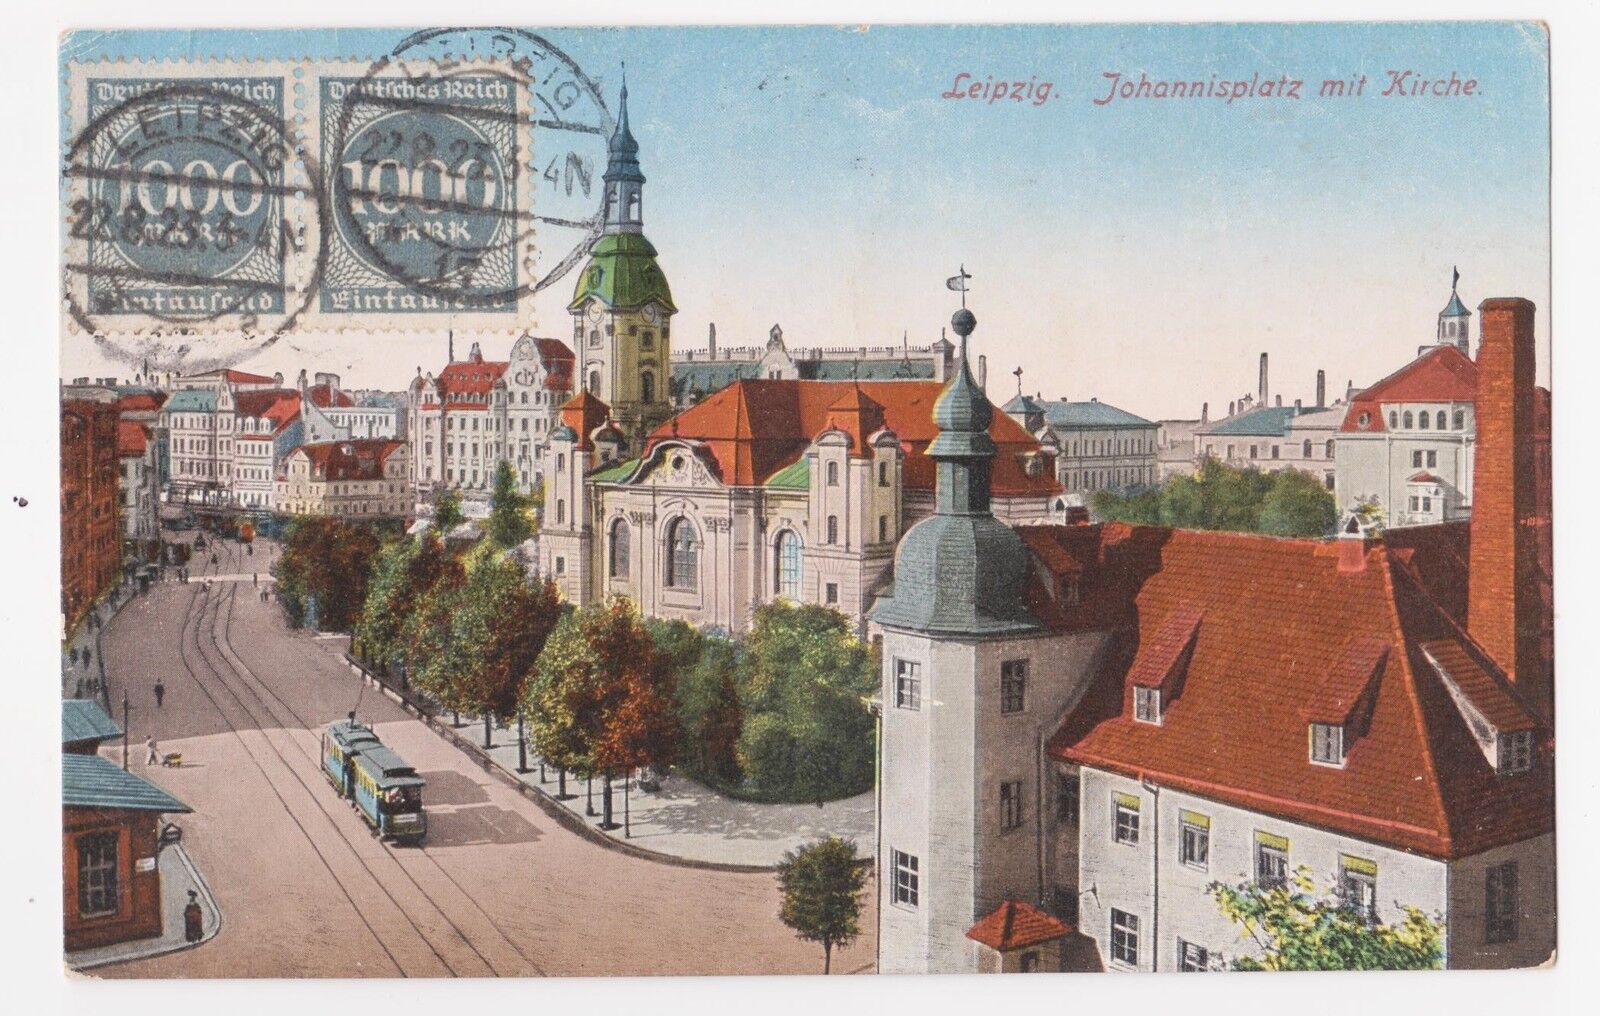 Leipzig,Germany,Johannisplatz mit Kirche,Trolley Car,Saxony,Used,Leipzig,1923